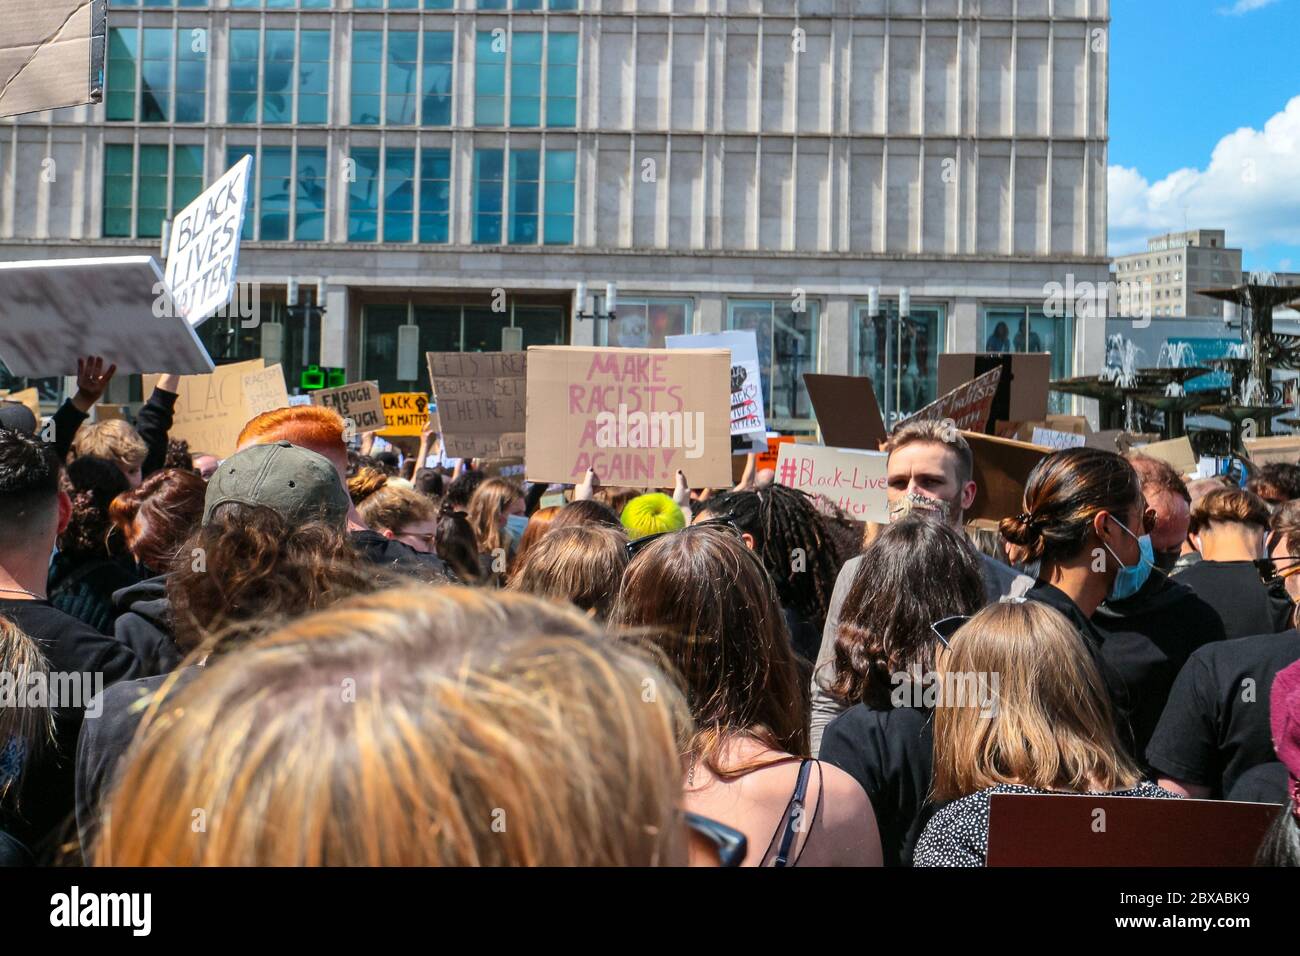 Les manifestants et les « racistes de Make ont peur à nouveau » signent une manifestation de Black Lives Matter à la suite de la mort de George Floyd sur Alexanderplatz Berlin, Allemagne. Banque D'Images